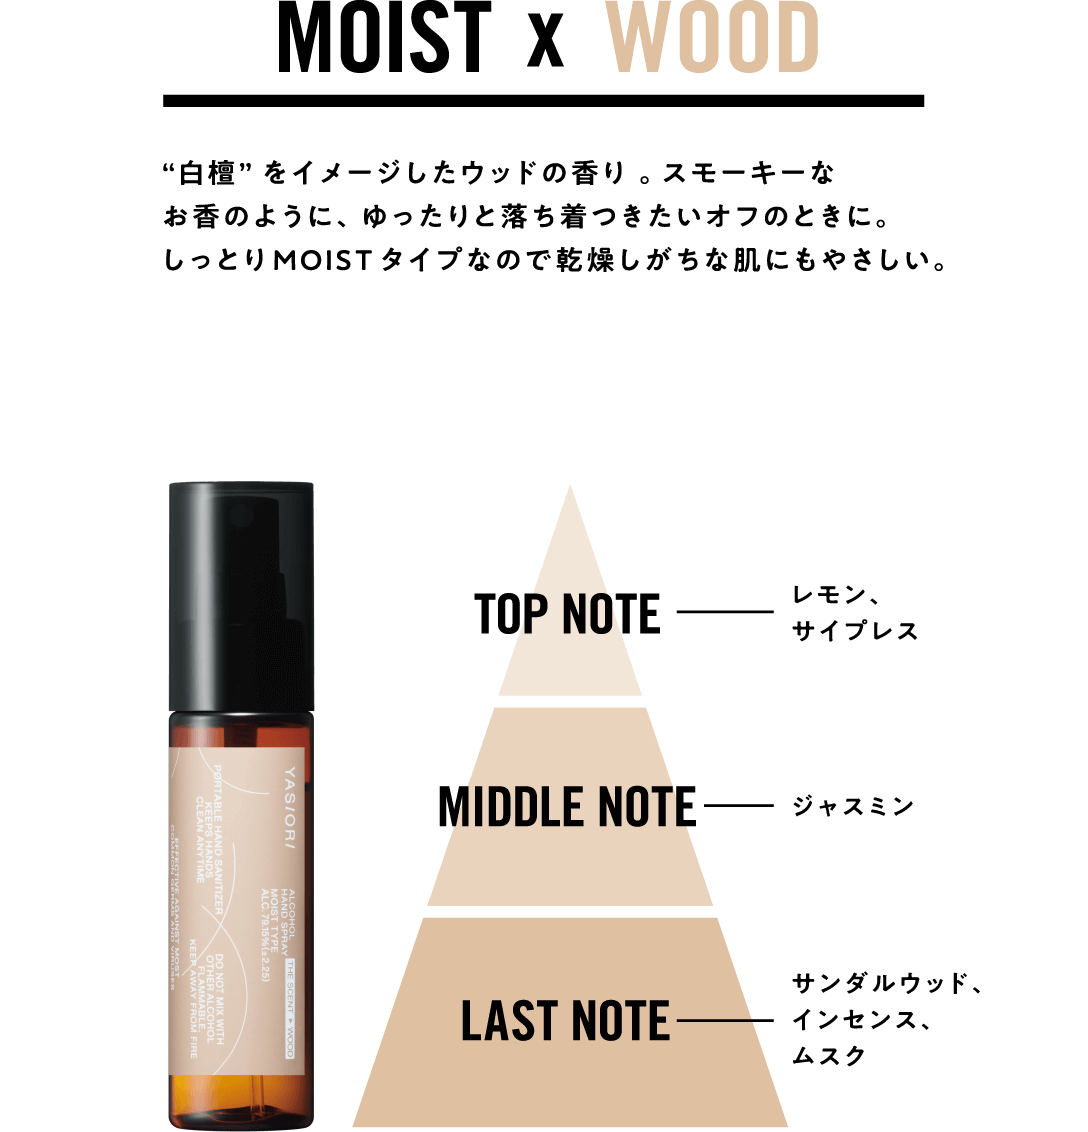 “白檀”をイメージしたウッドの香り 。スモーキーなお香のように、 ゆったりと落ち着つきたいオフのときに。 しっとりMOISTタイプなので乾燥しがちな肌にもやさしい。